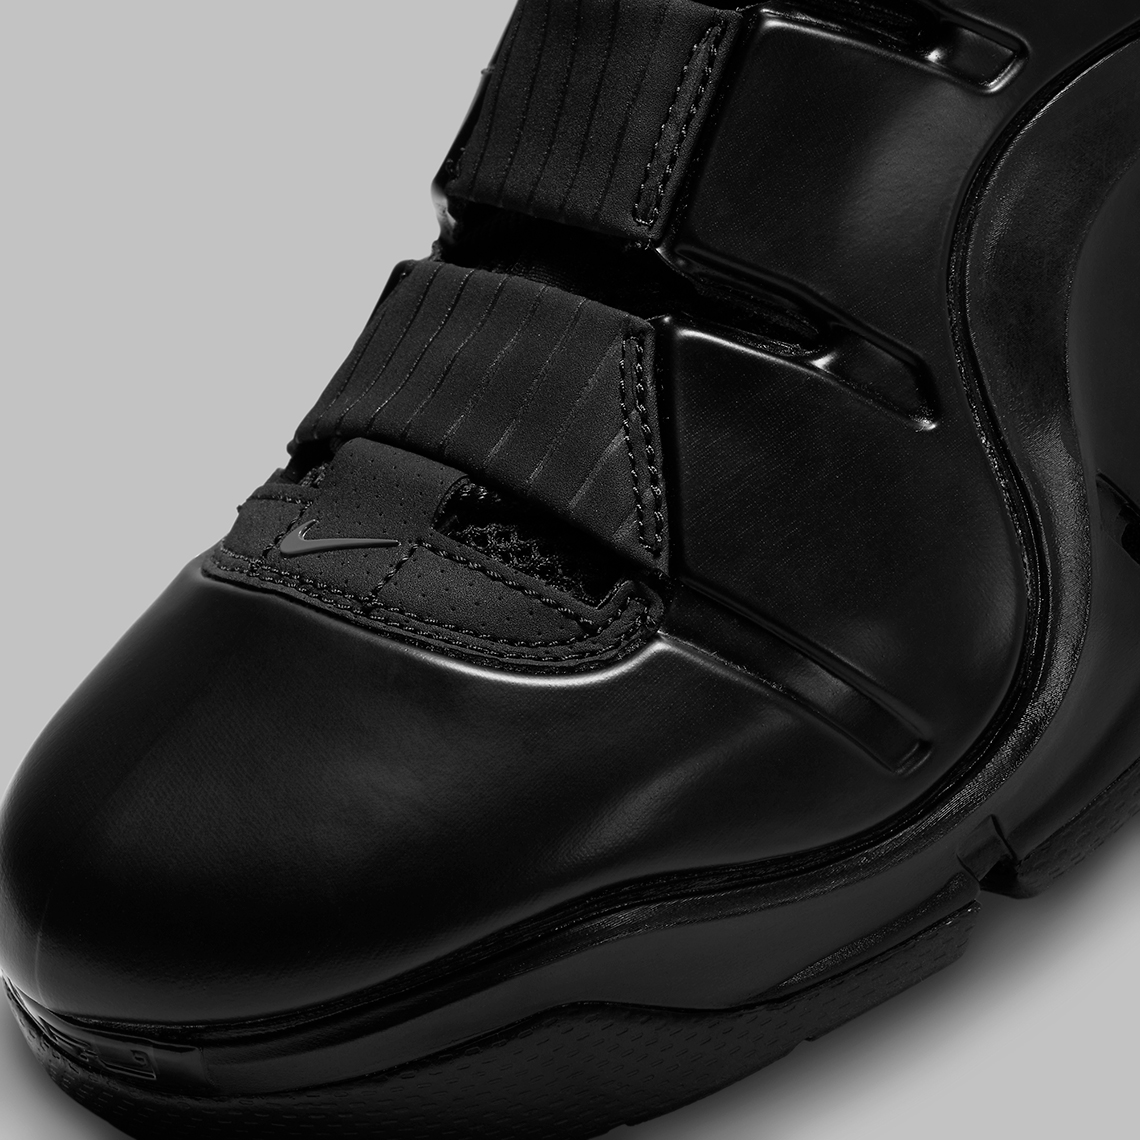 Nike Lebron 4 Black Anthracite Fj1597 001 10